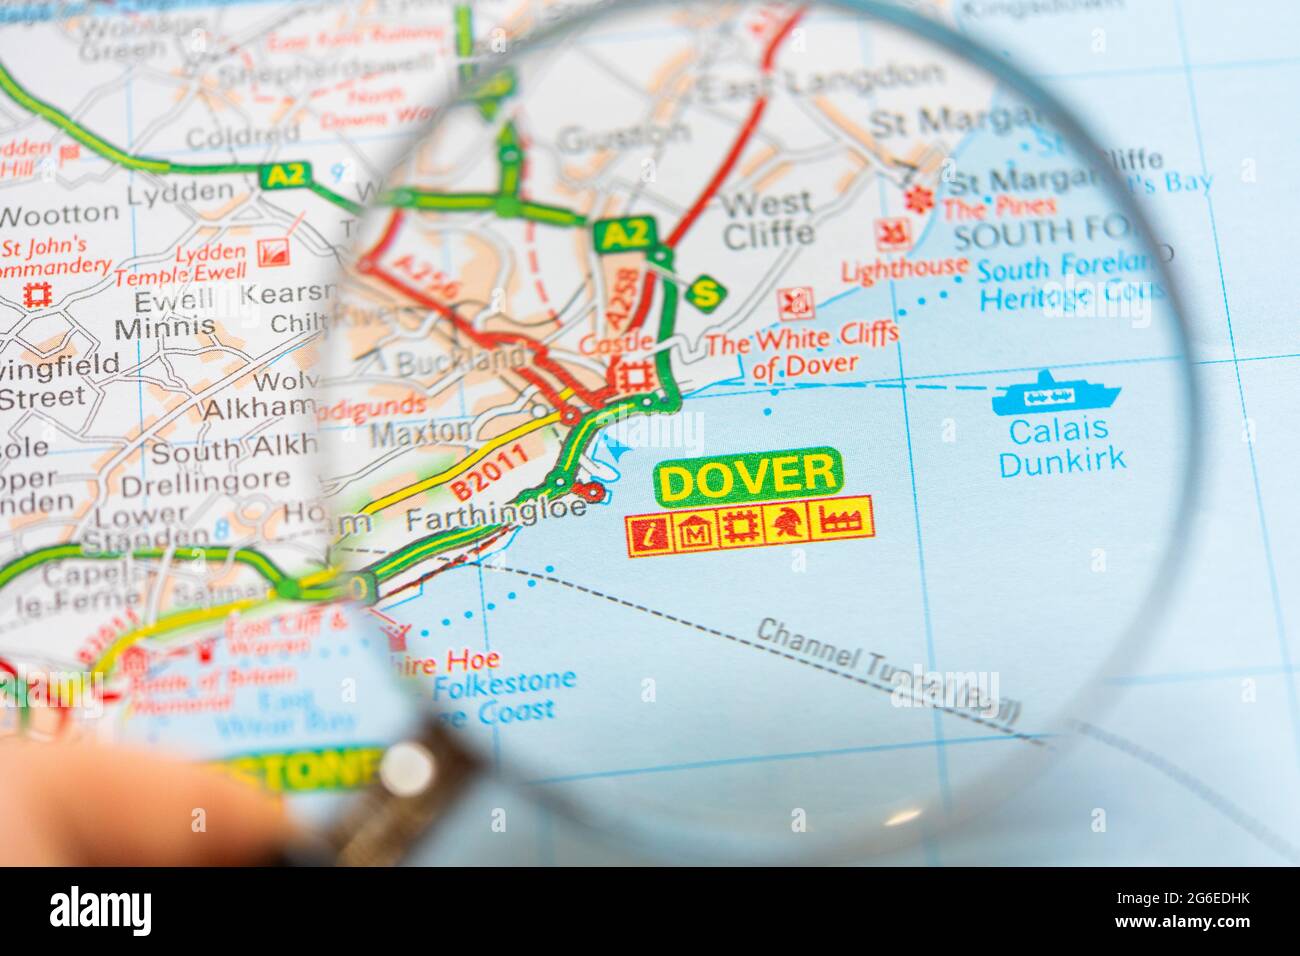 Eine Makroansicht einer Seite in einem gedruckten Roadmap-Atlas mit einer Hand eines Mannes, der eine Lupe hält, die eine Vergrößerung der Stadt in England zeigt Stockfoto